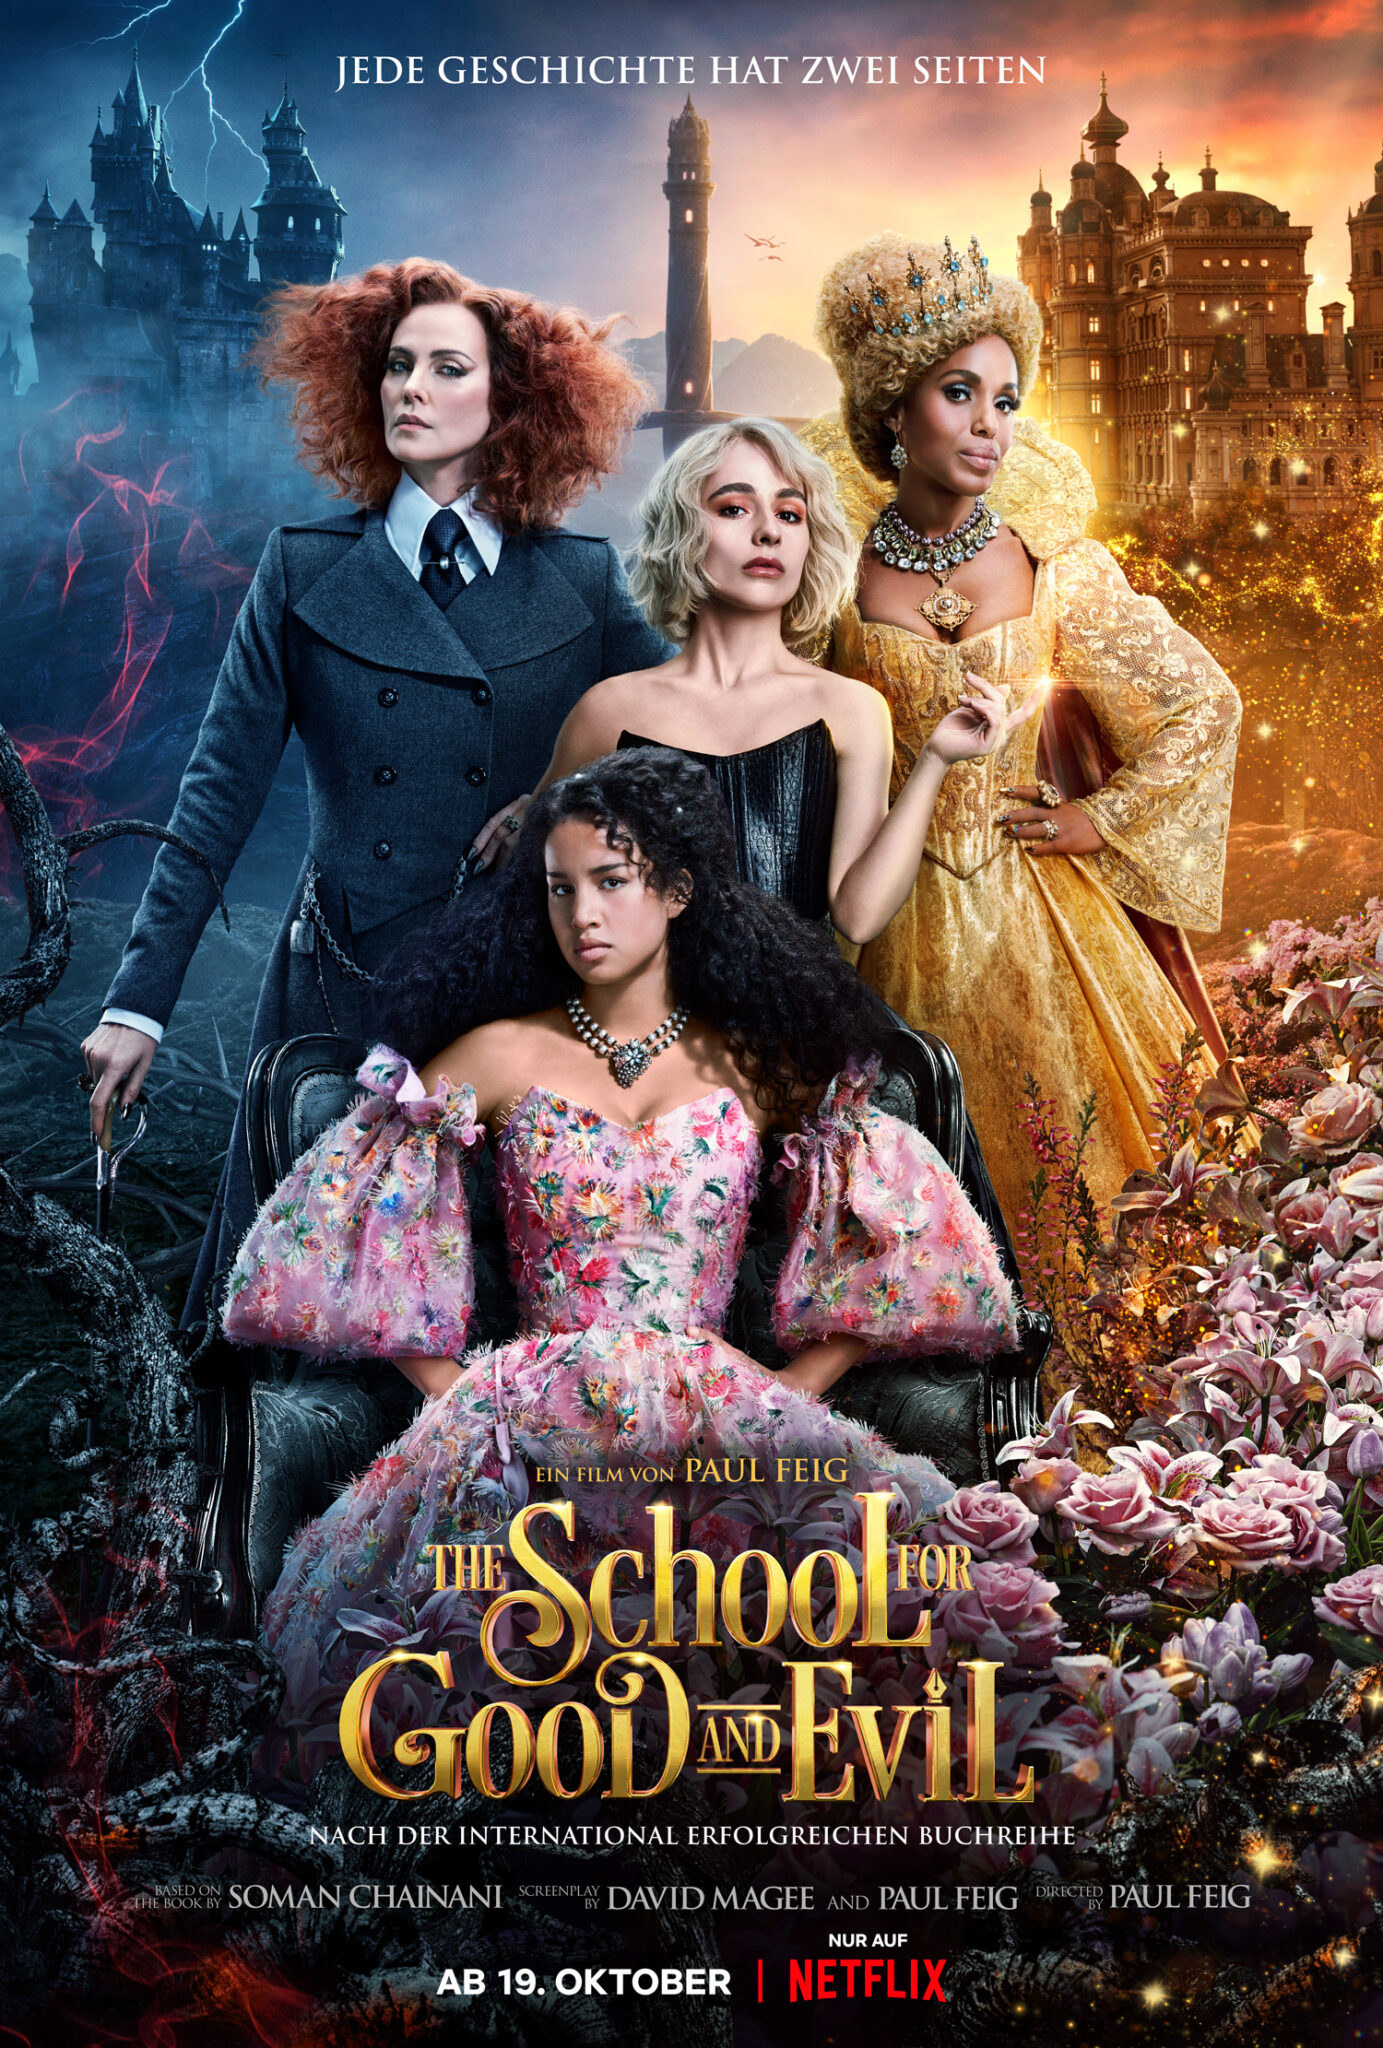 Das Poster zu The School for Good and Evil zeigt vier Frauenfiguren in bunten Kleidern.